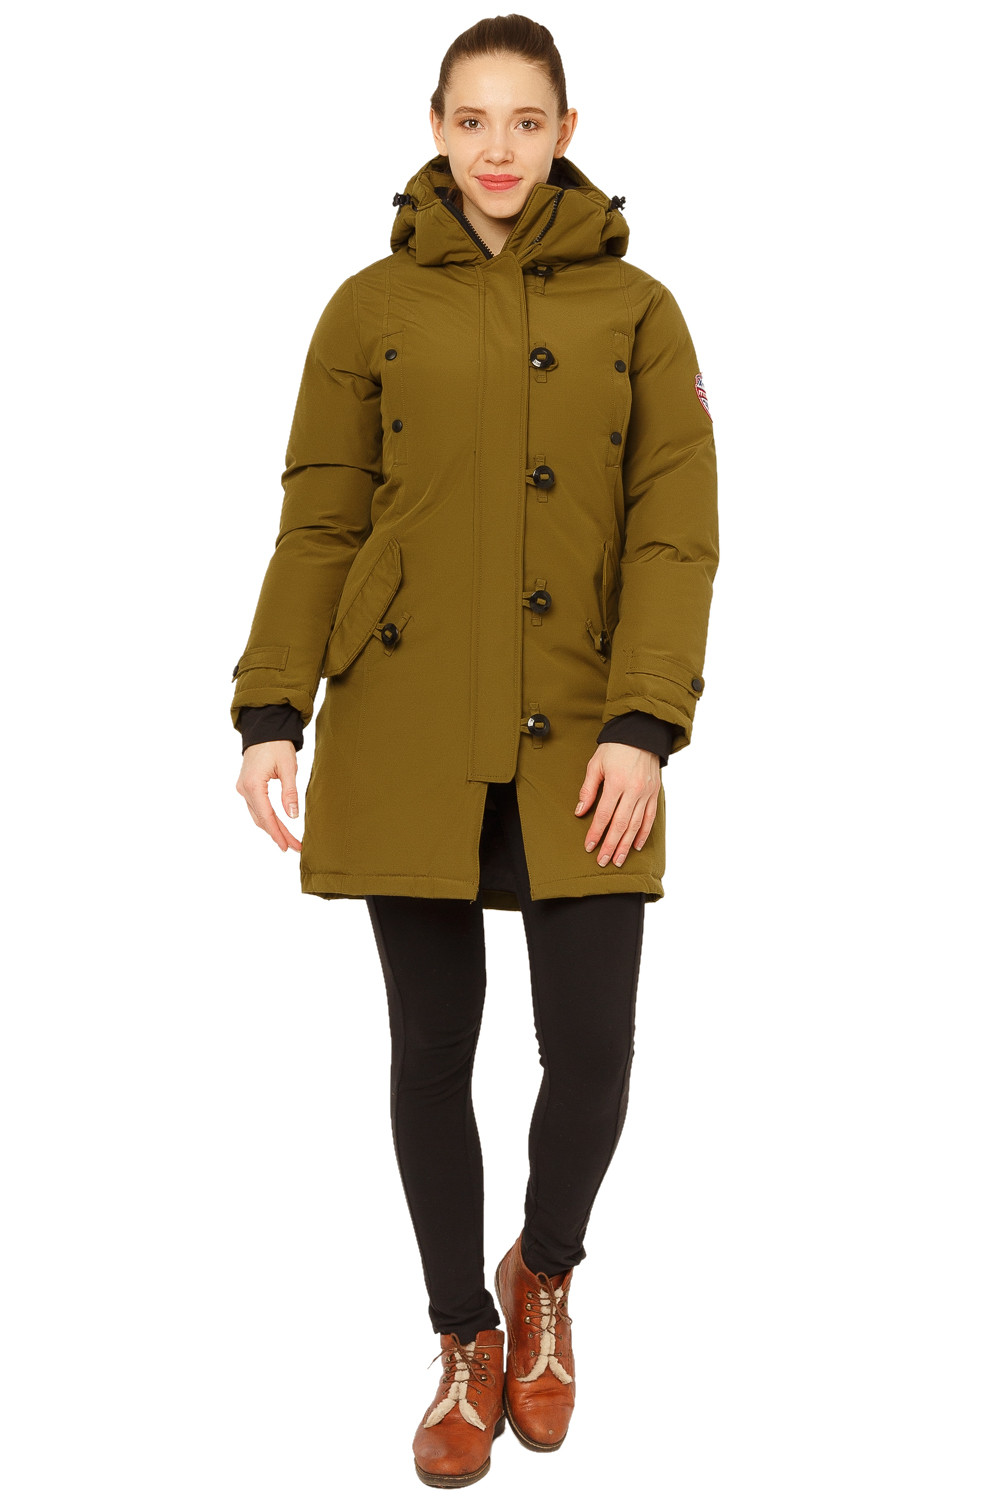 Купить Куртка парка зимняя женская цвета хаки 1802Kh